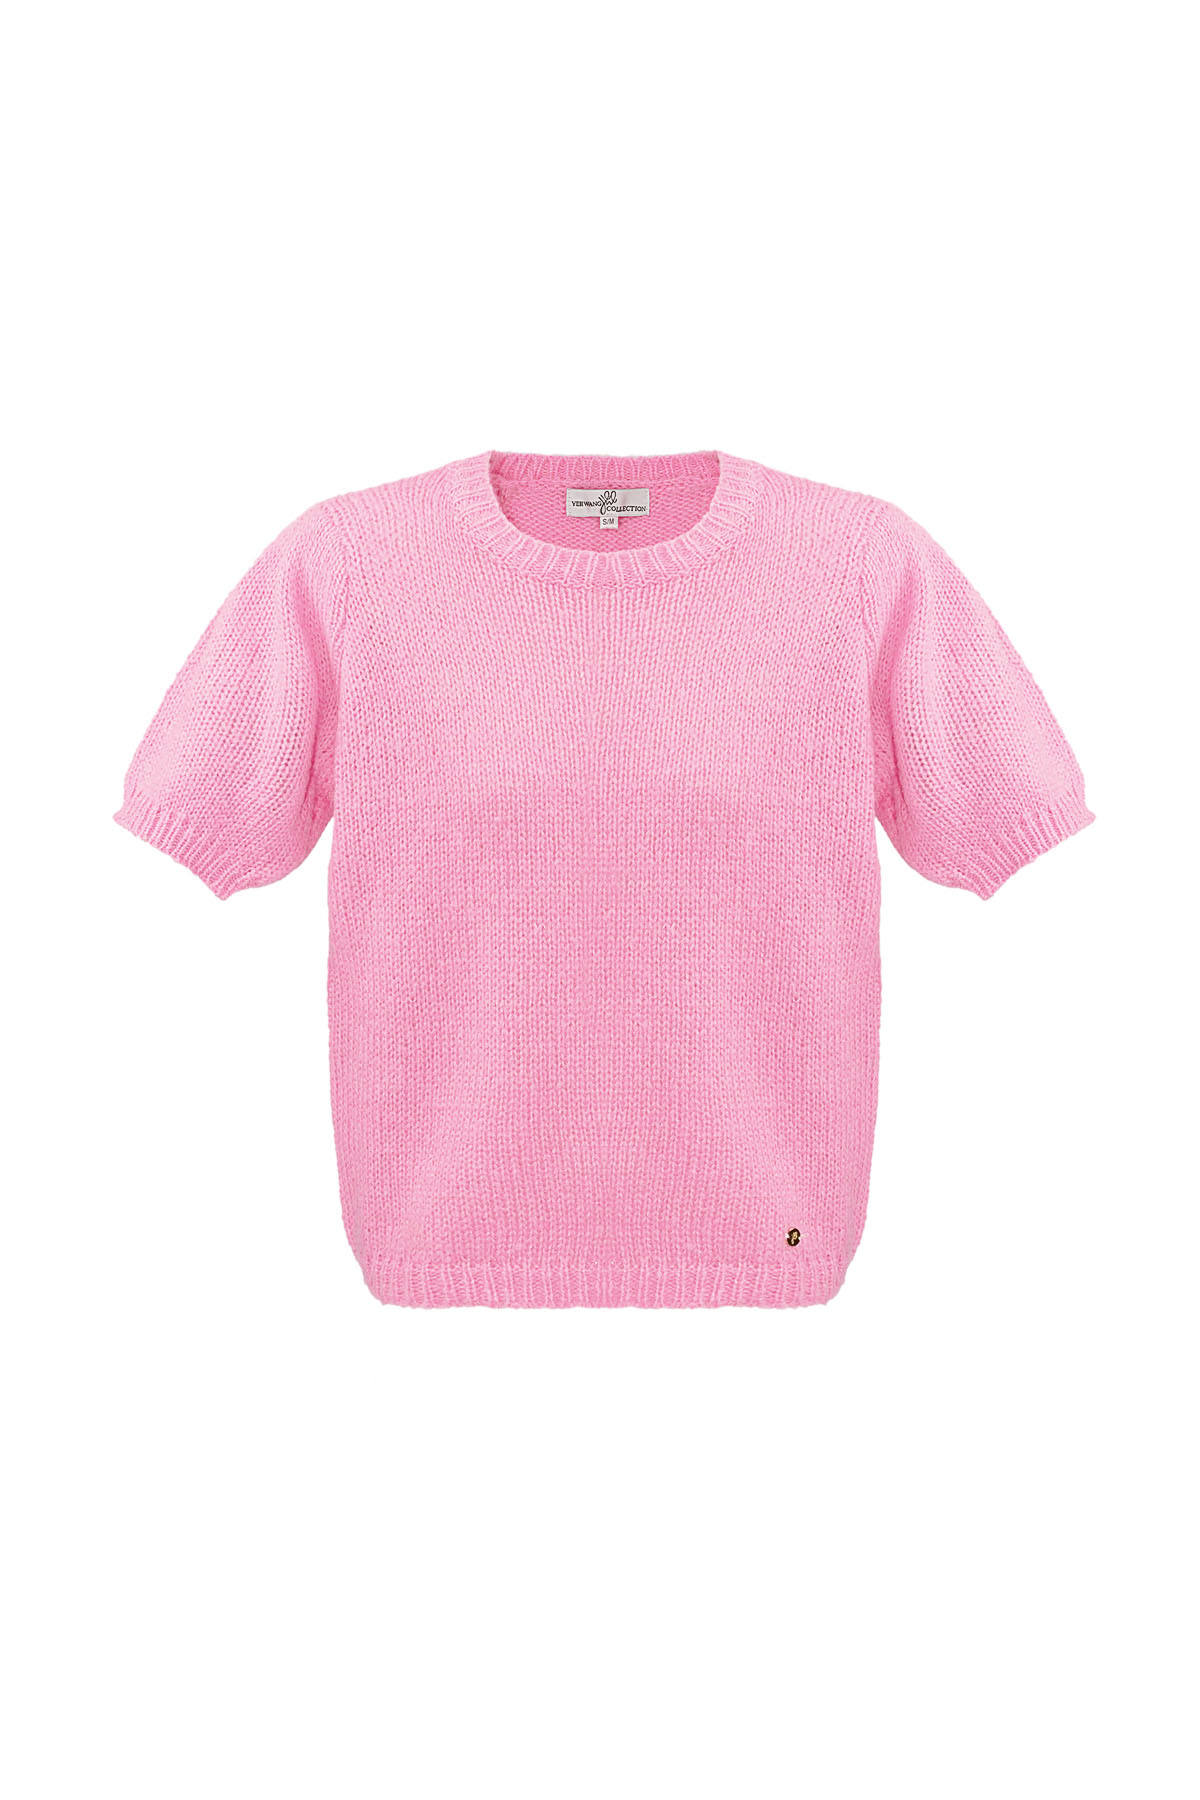 Camicia basic con maniche a sbuffo - rosa h5 